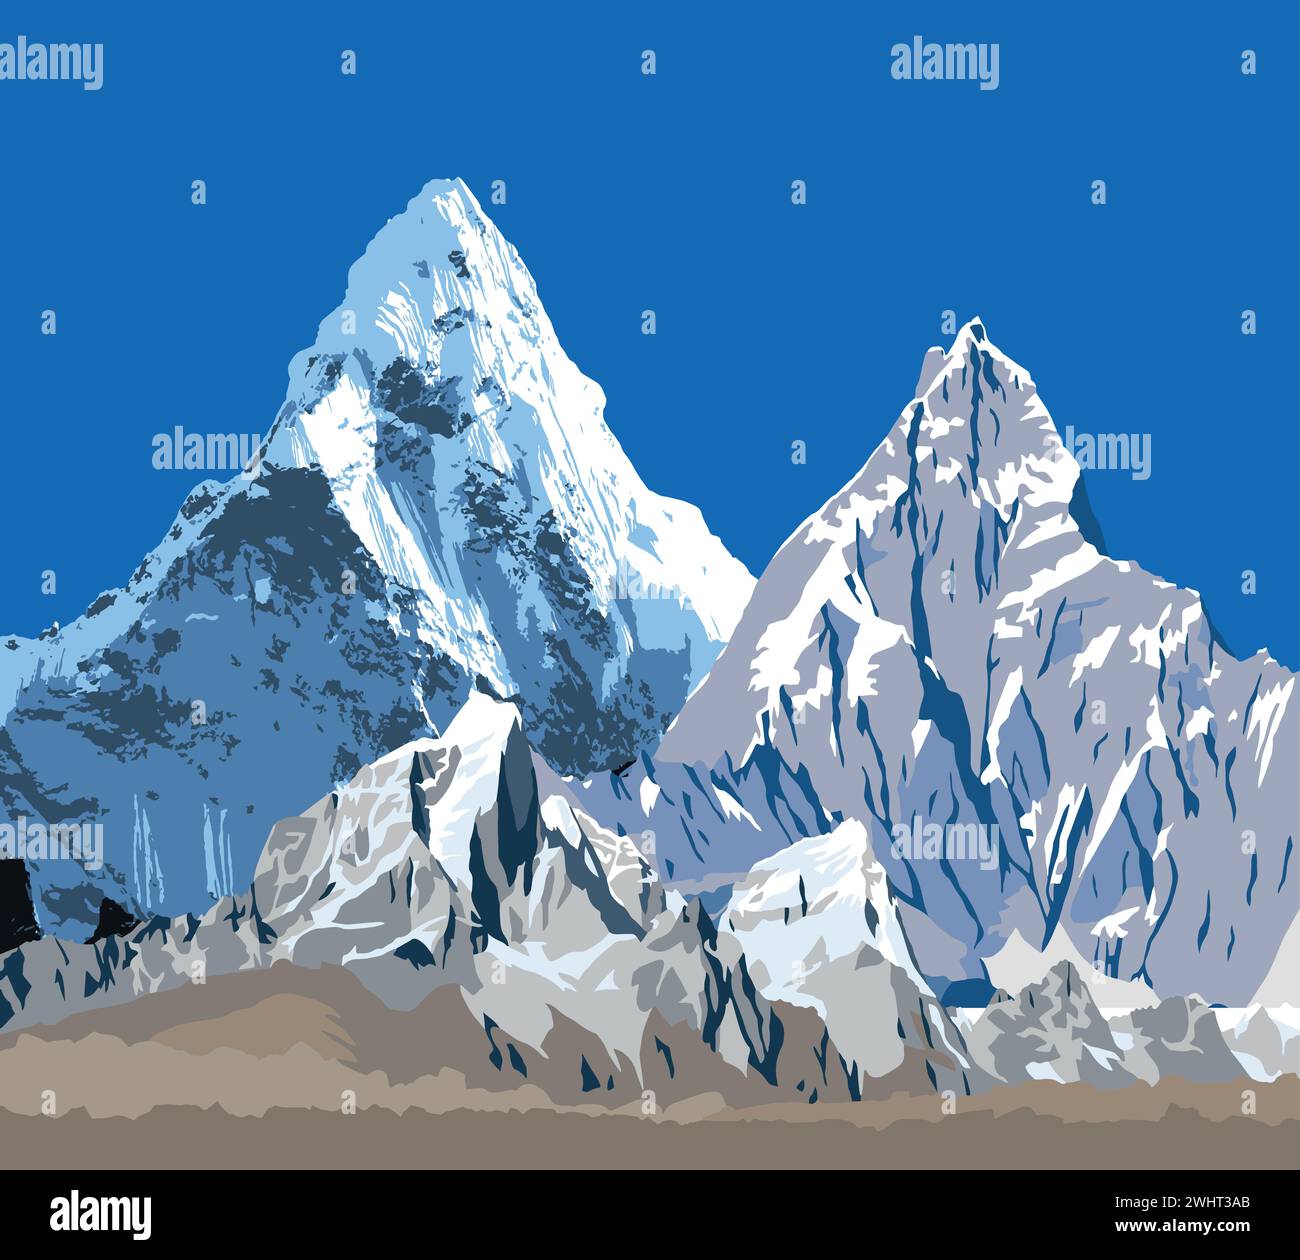 Grande catena himalayana, Himalayas montagne vettoriali illustrazione, montagna innevata di colore bianco e blu Illustrazione Vettoriale